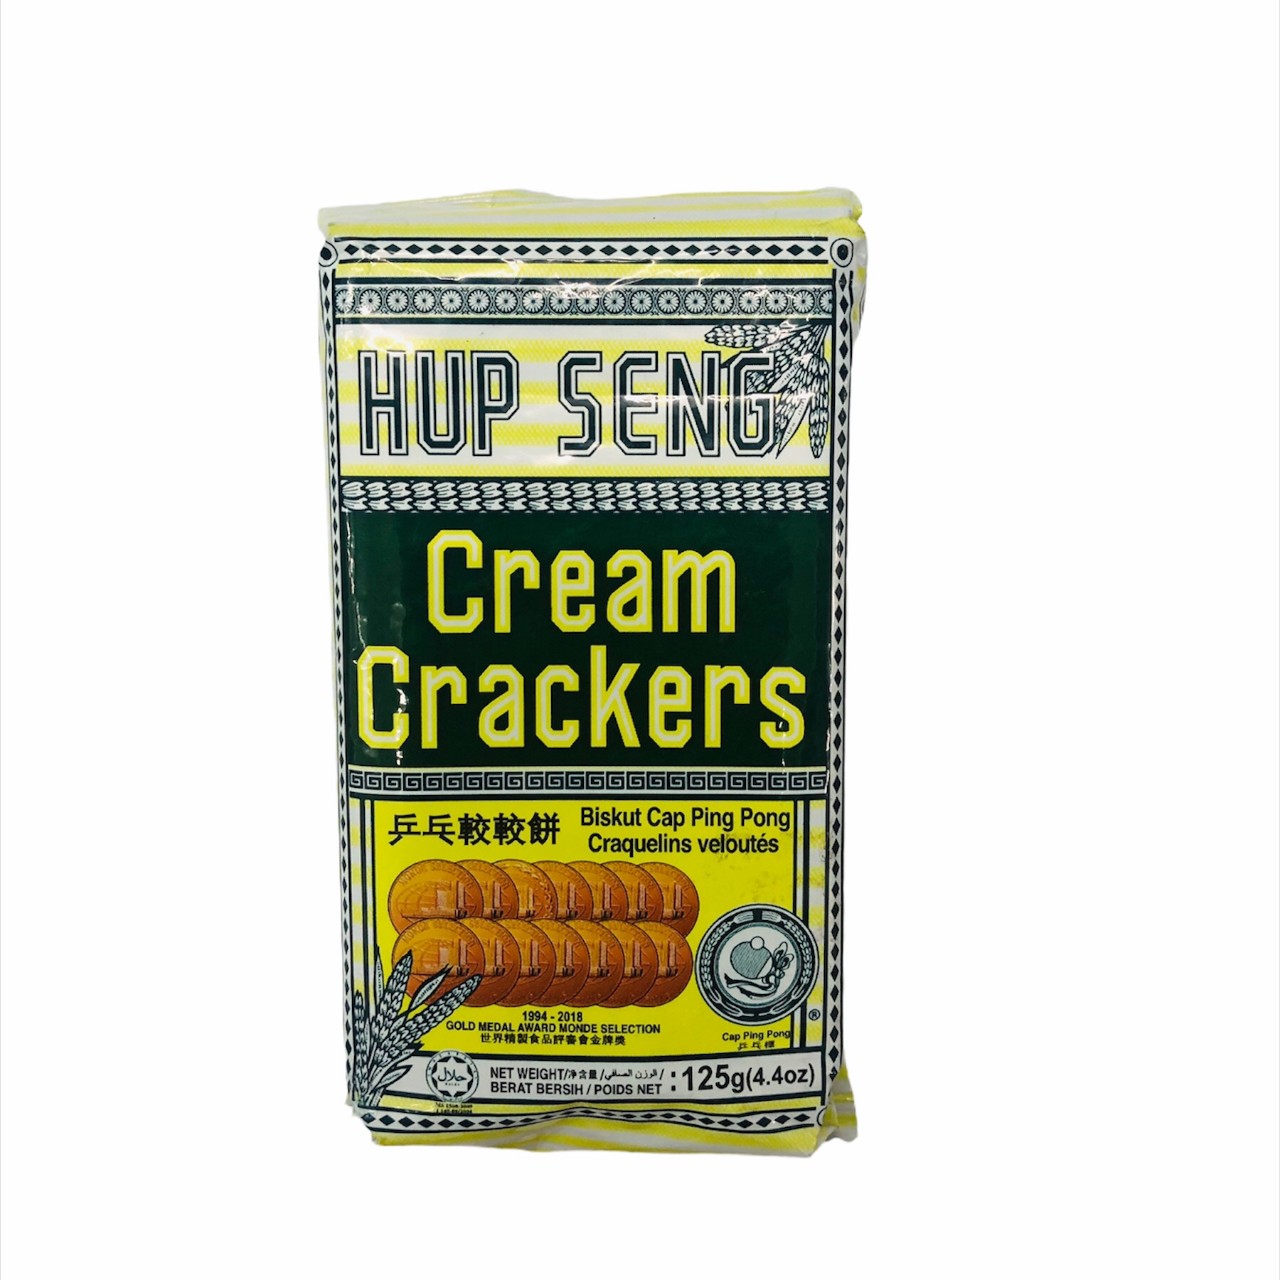 Bánh Tây Hup Seng - Cream Crackers 125g